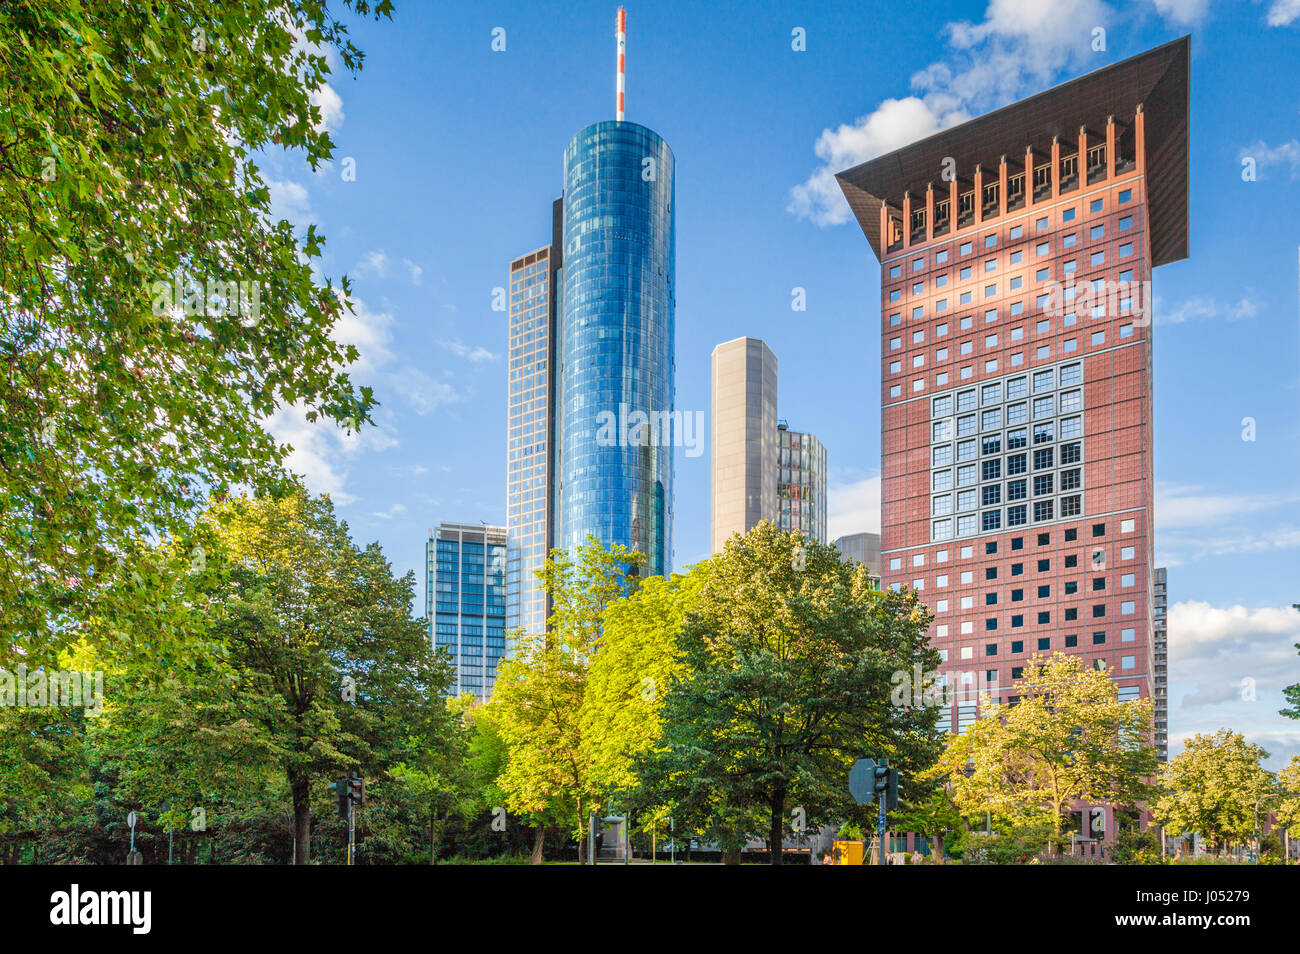 Panoramablick über moderne Wolkenkratzer in der finanziellen Bezirk von Frankfurt / Main mit grünen Bäumen im öffentlichen Park an einem schönen sonnigen Tag im Frühling Stockfoto